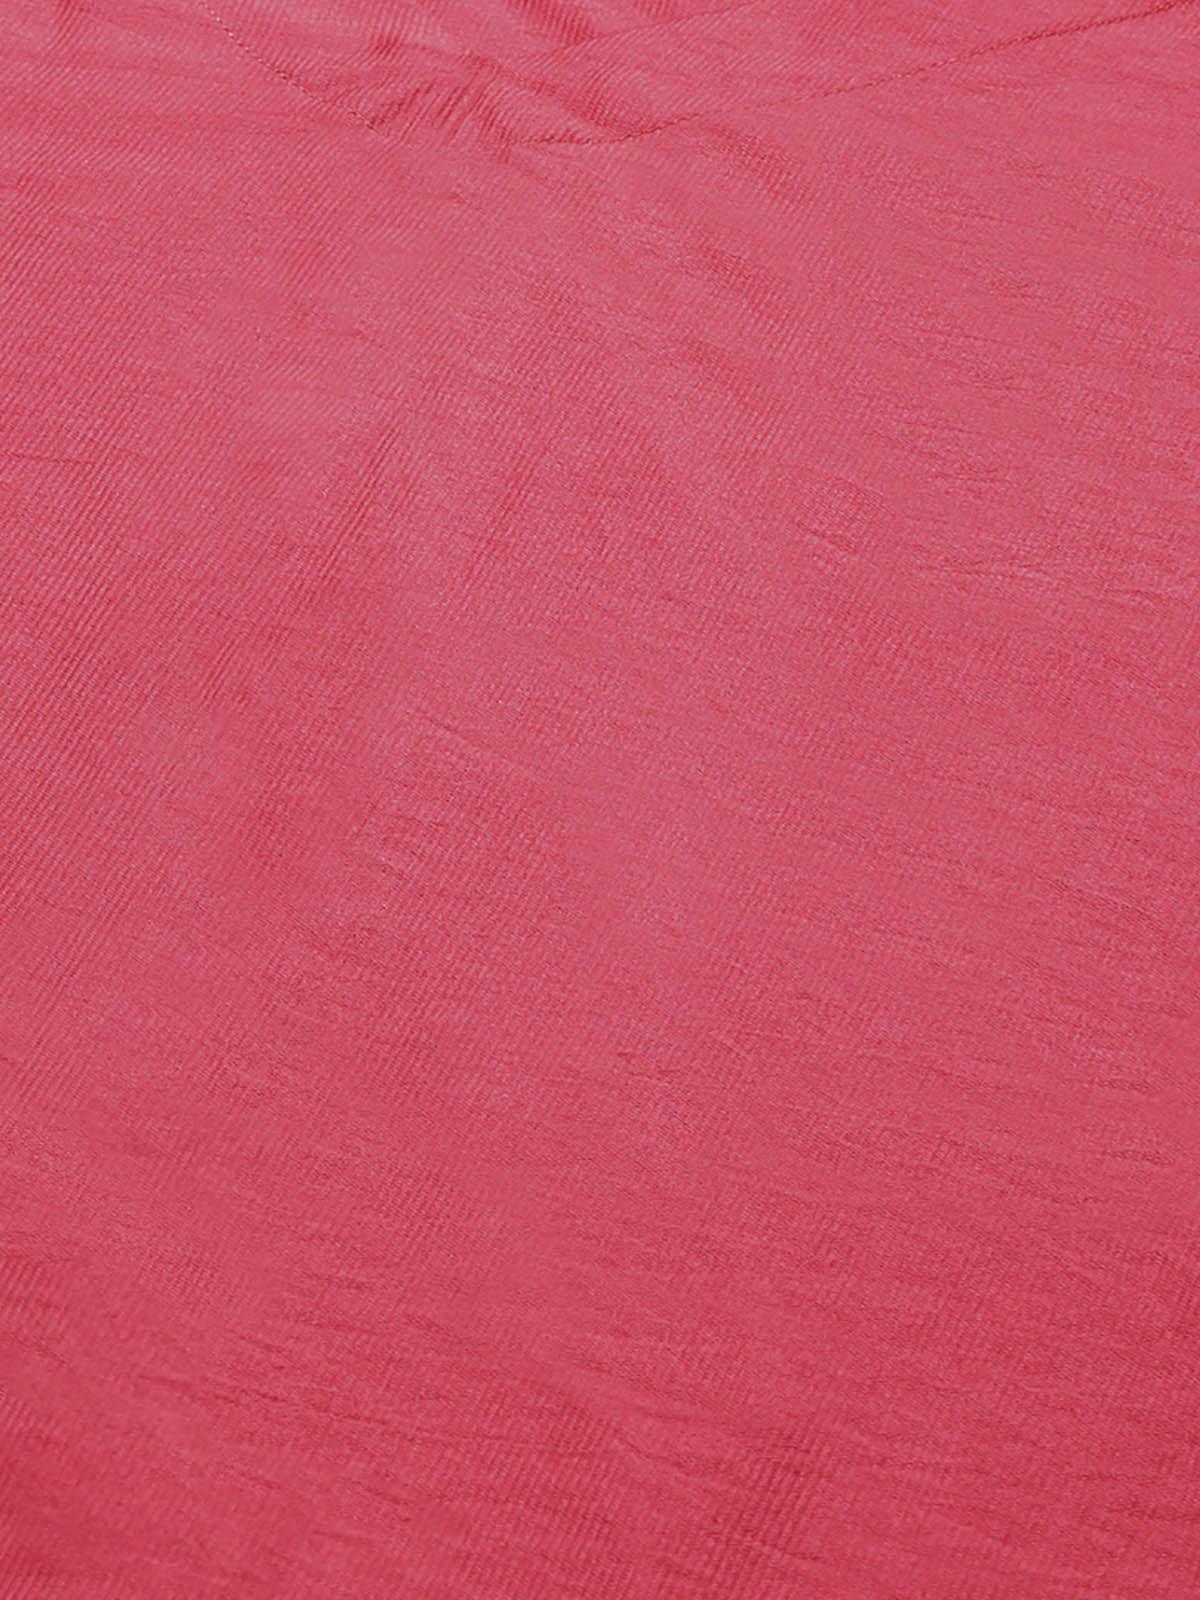 Pink Straight Kurta Palazzo With Dupatta Set - Odette